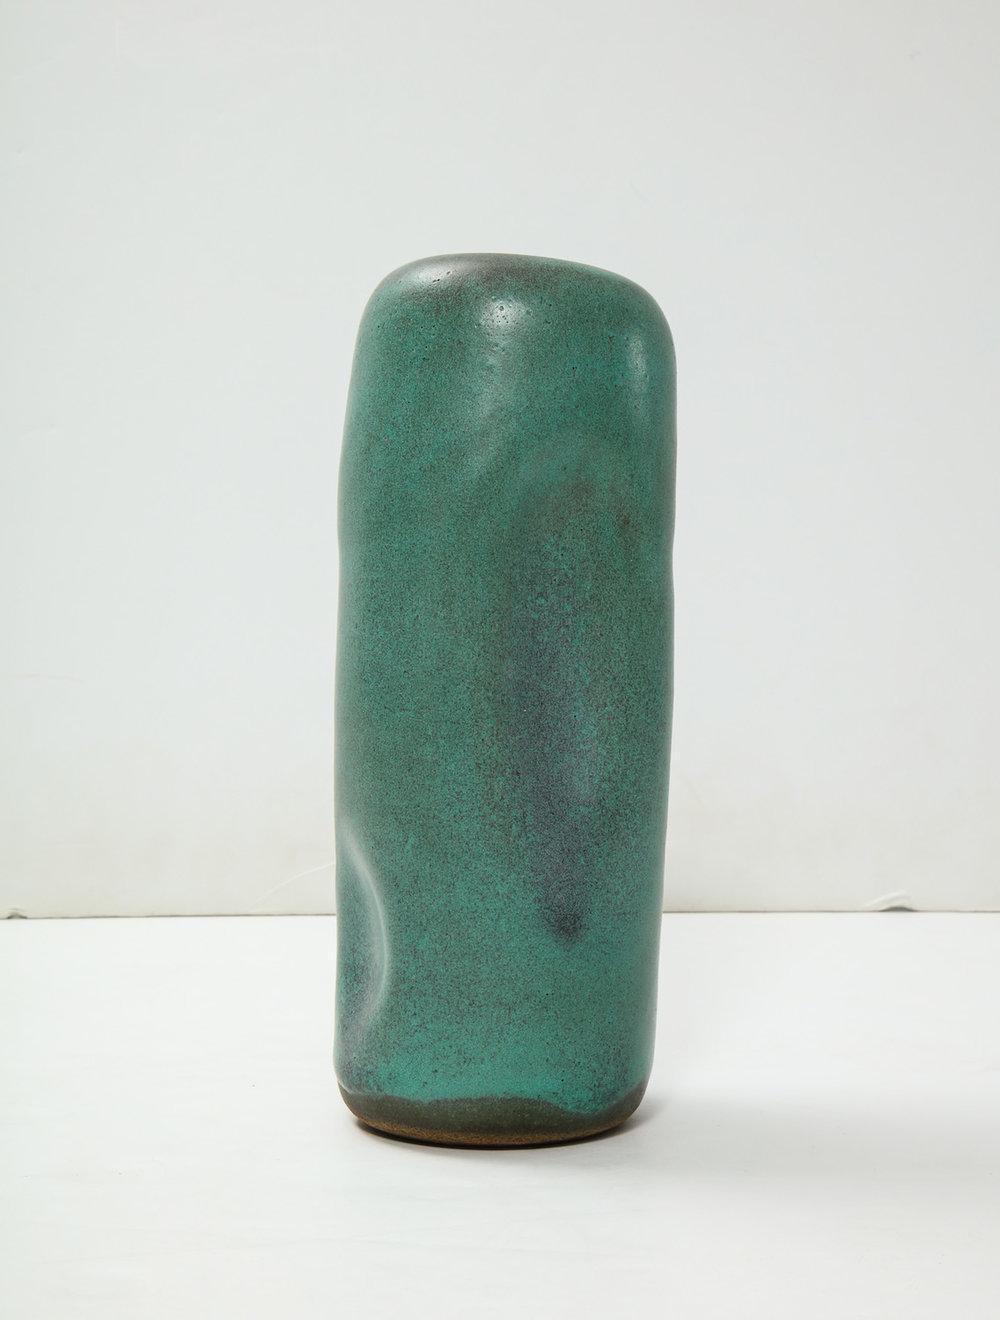 Forme cylindrique penchée TOTEM, construite à la main avec des indentations, émaux verts. Signature de l'artiste en dessous.